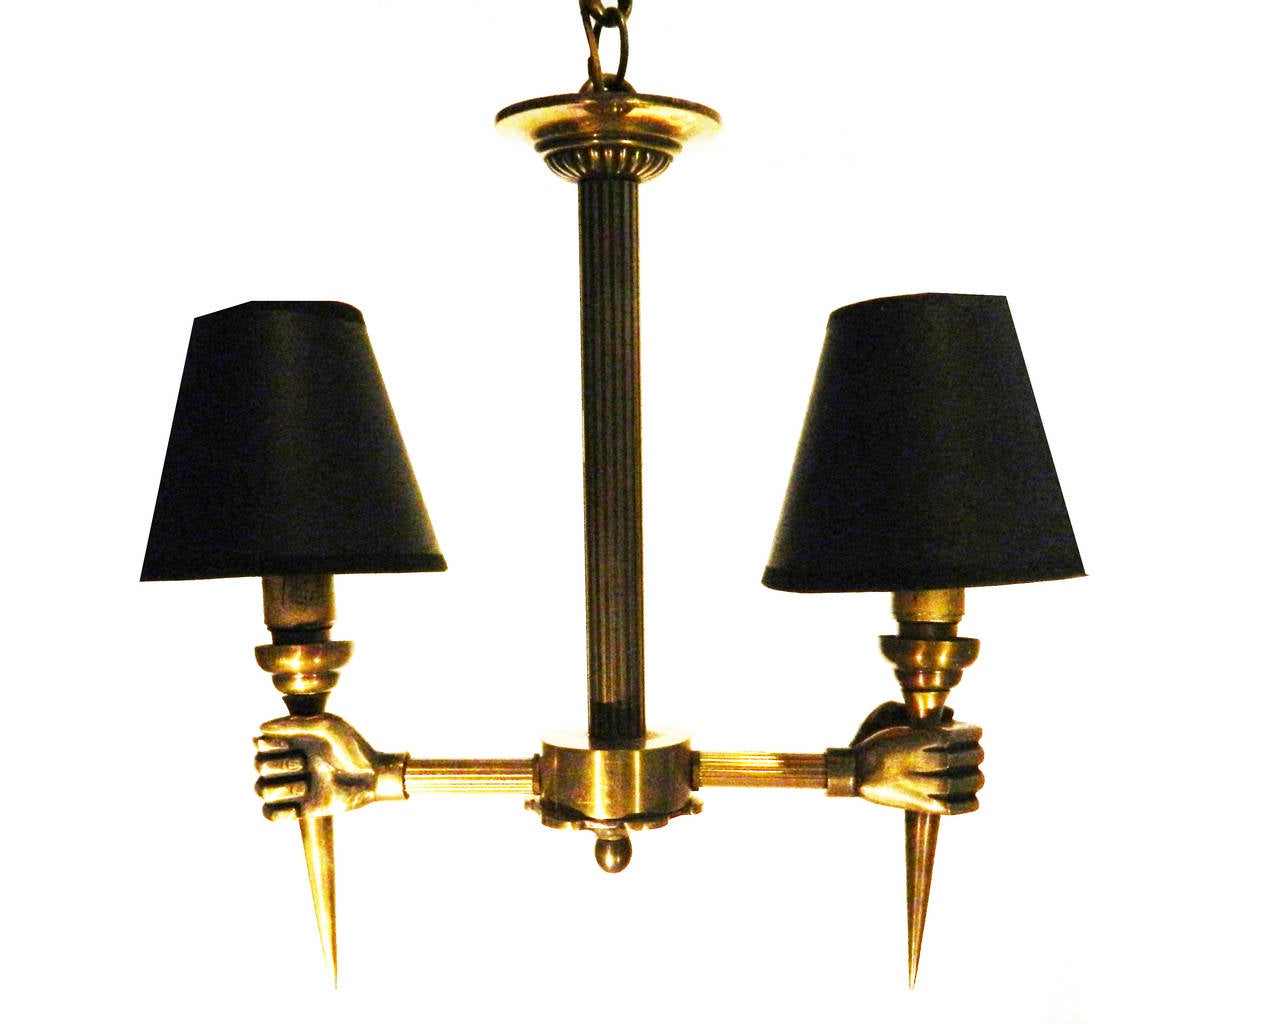  Arbus brass chandelier.
